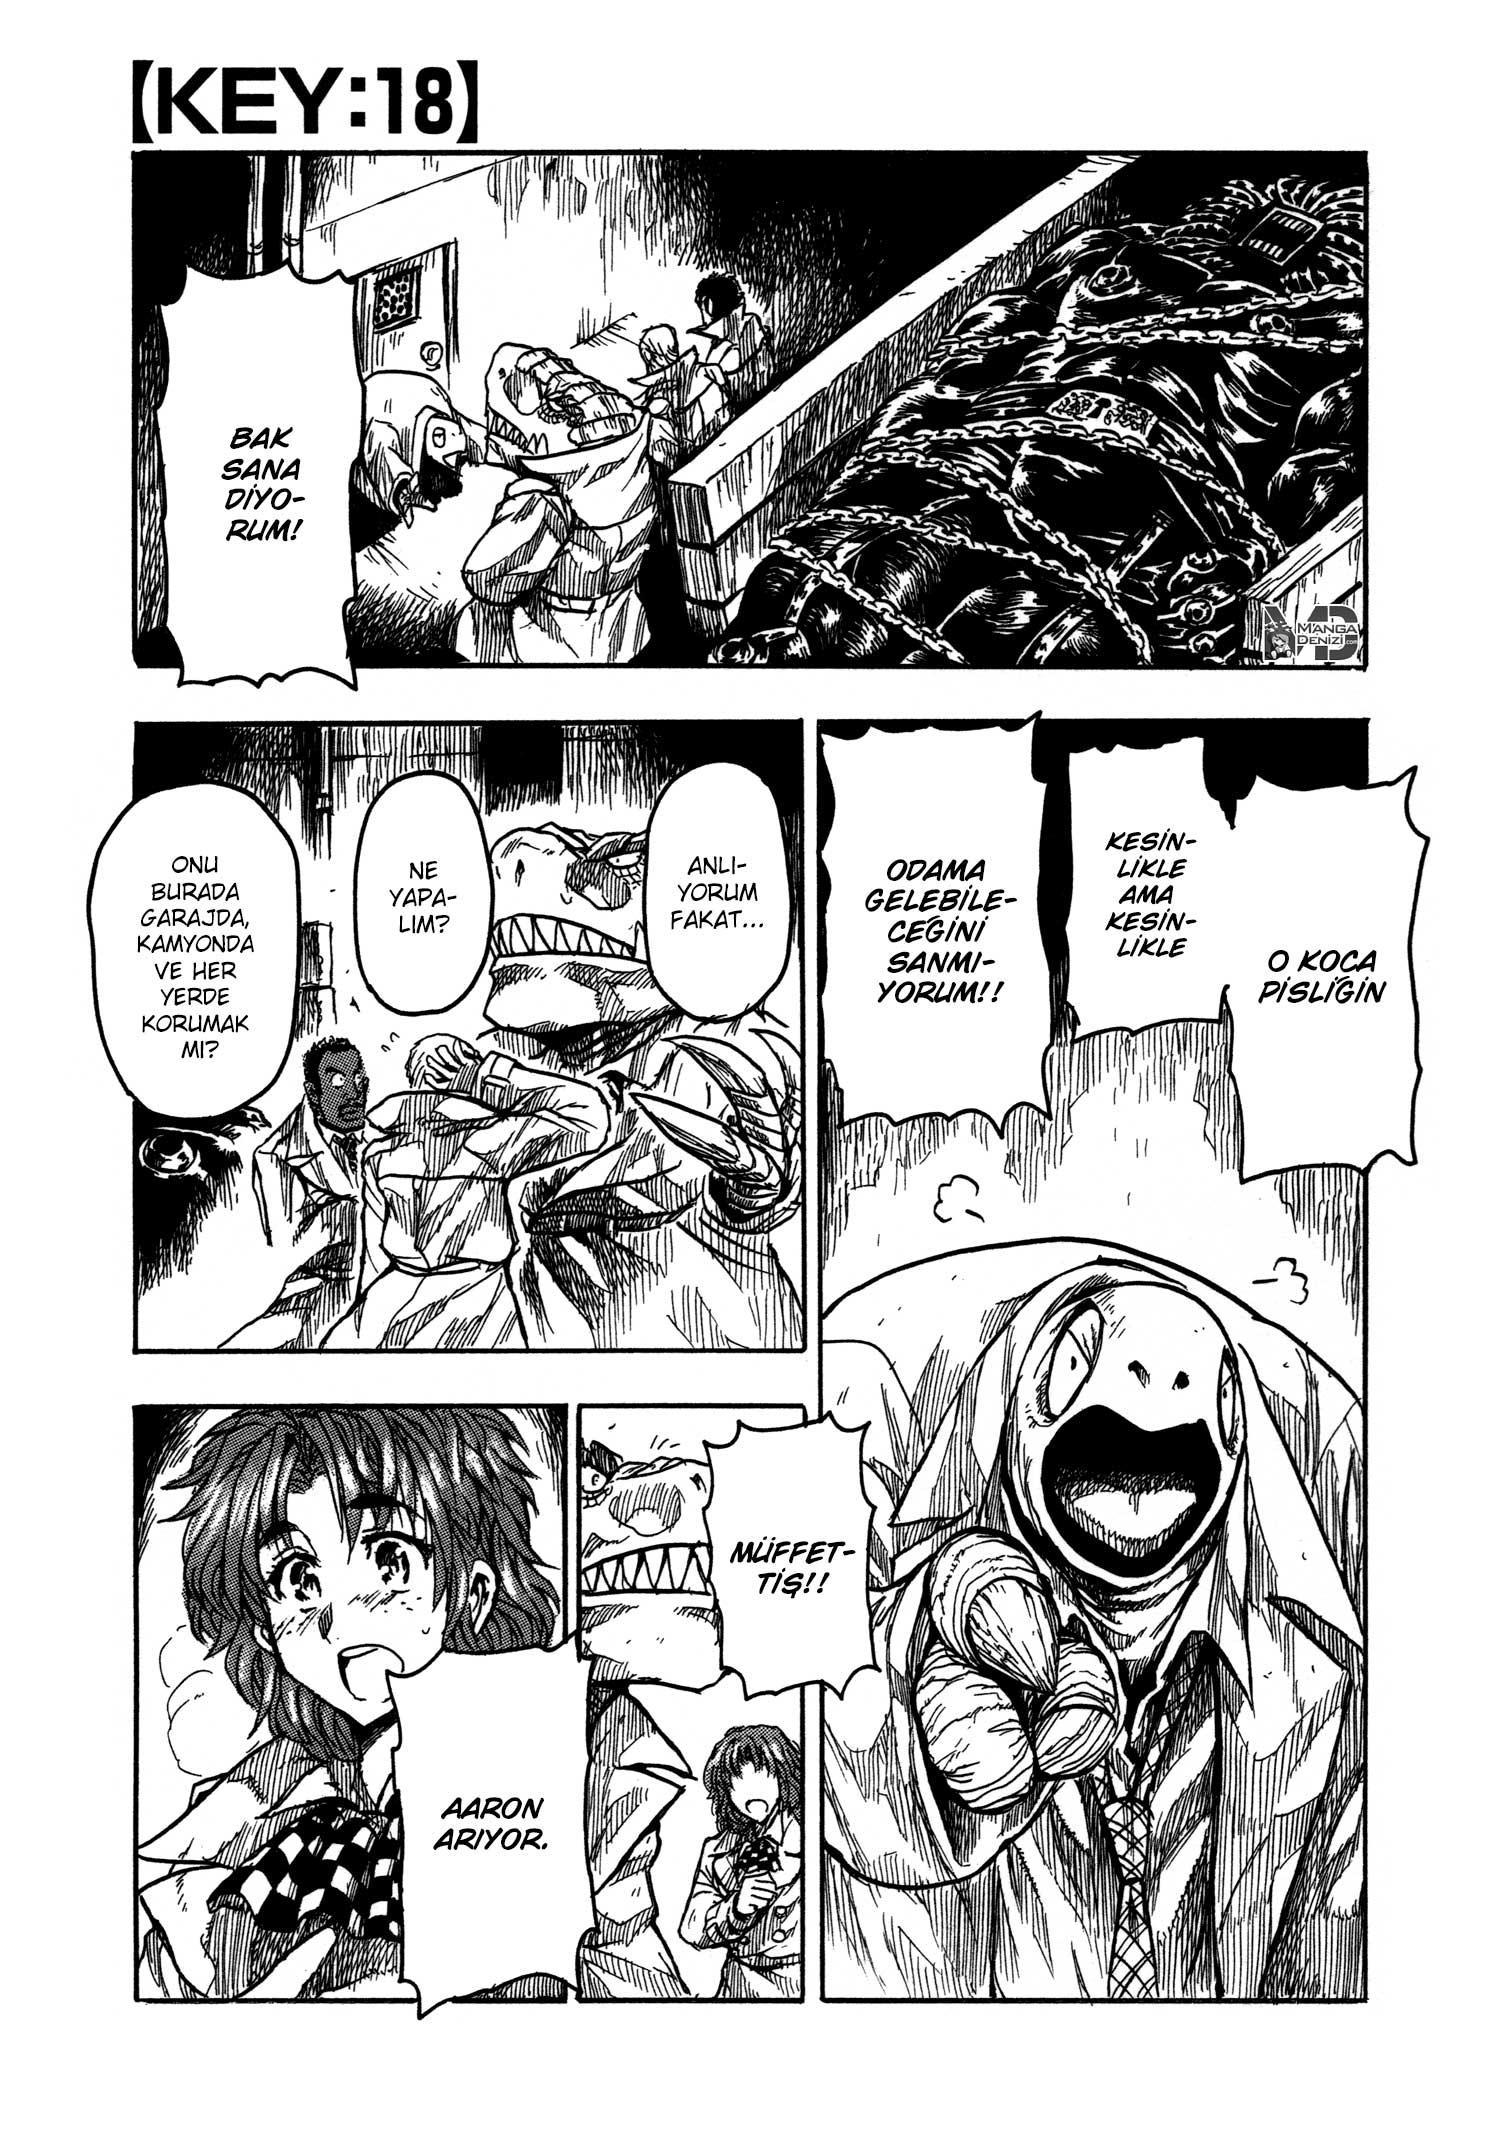 Keyman: The Hand of Judgement mangasının 18 bölümünün 2. sayfasını okuyorsunuz.